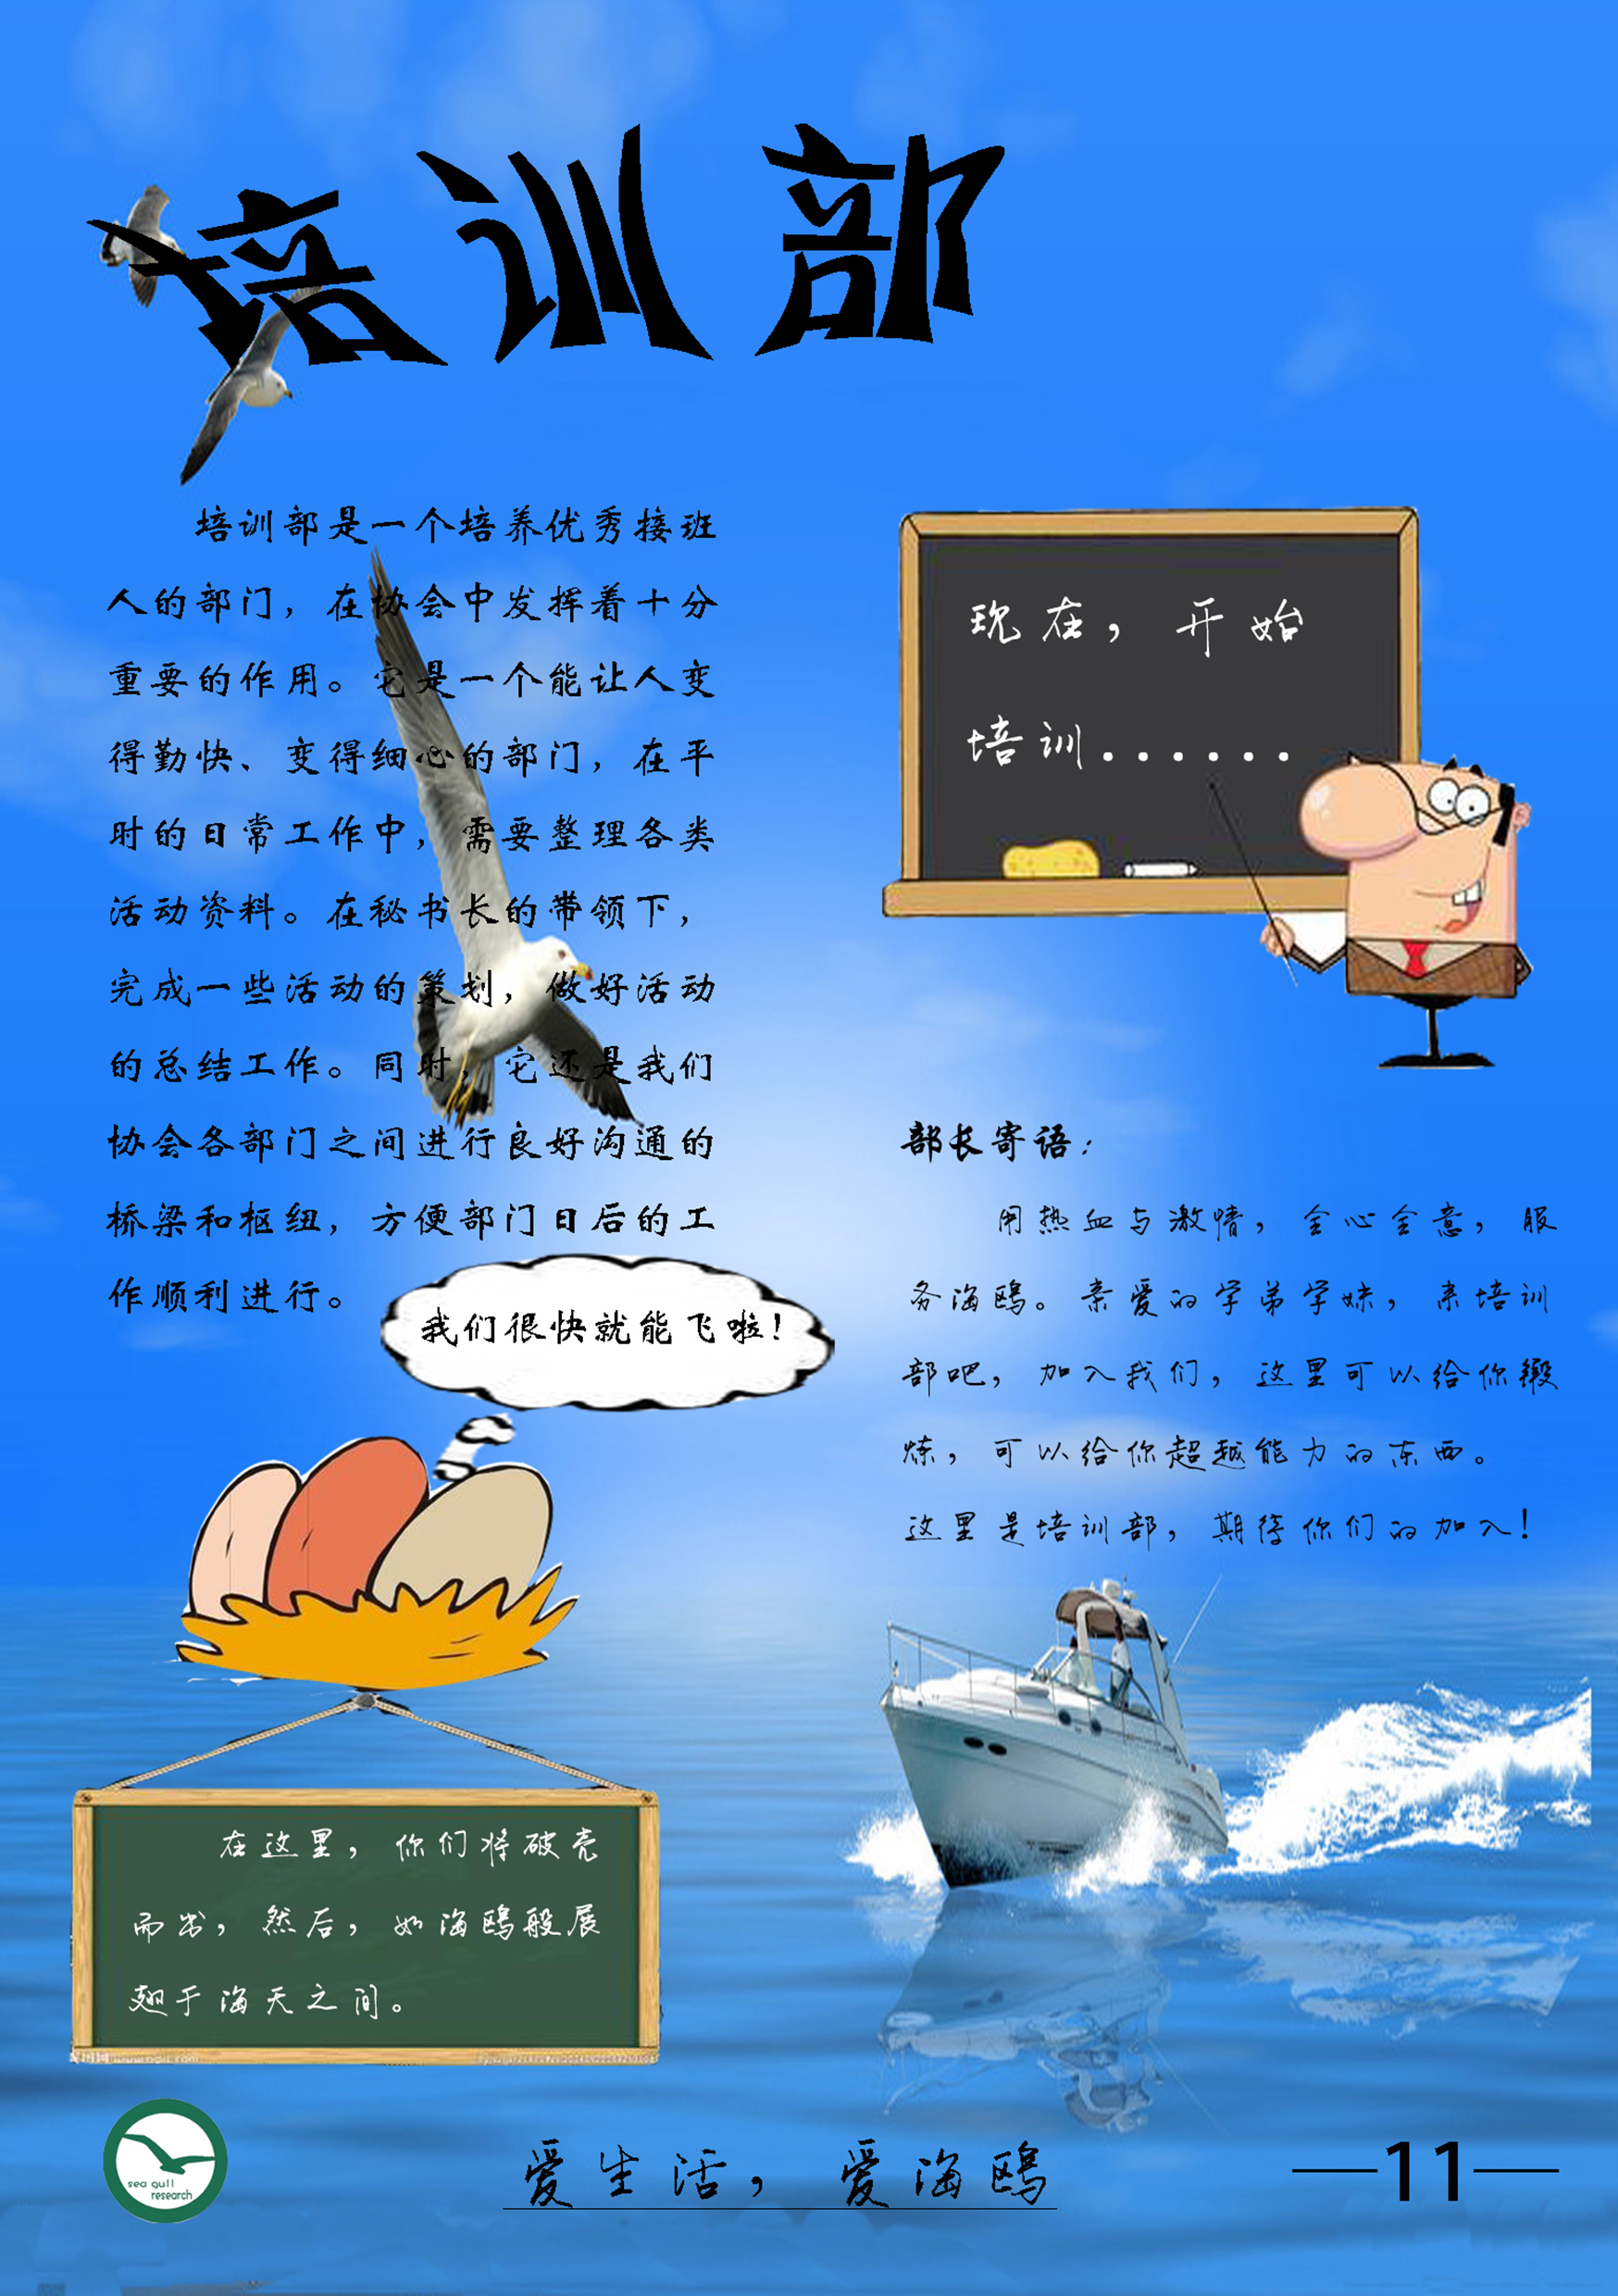 江西農業大學海鷗社會調查協會